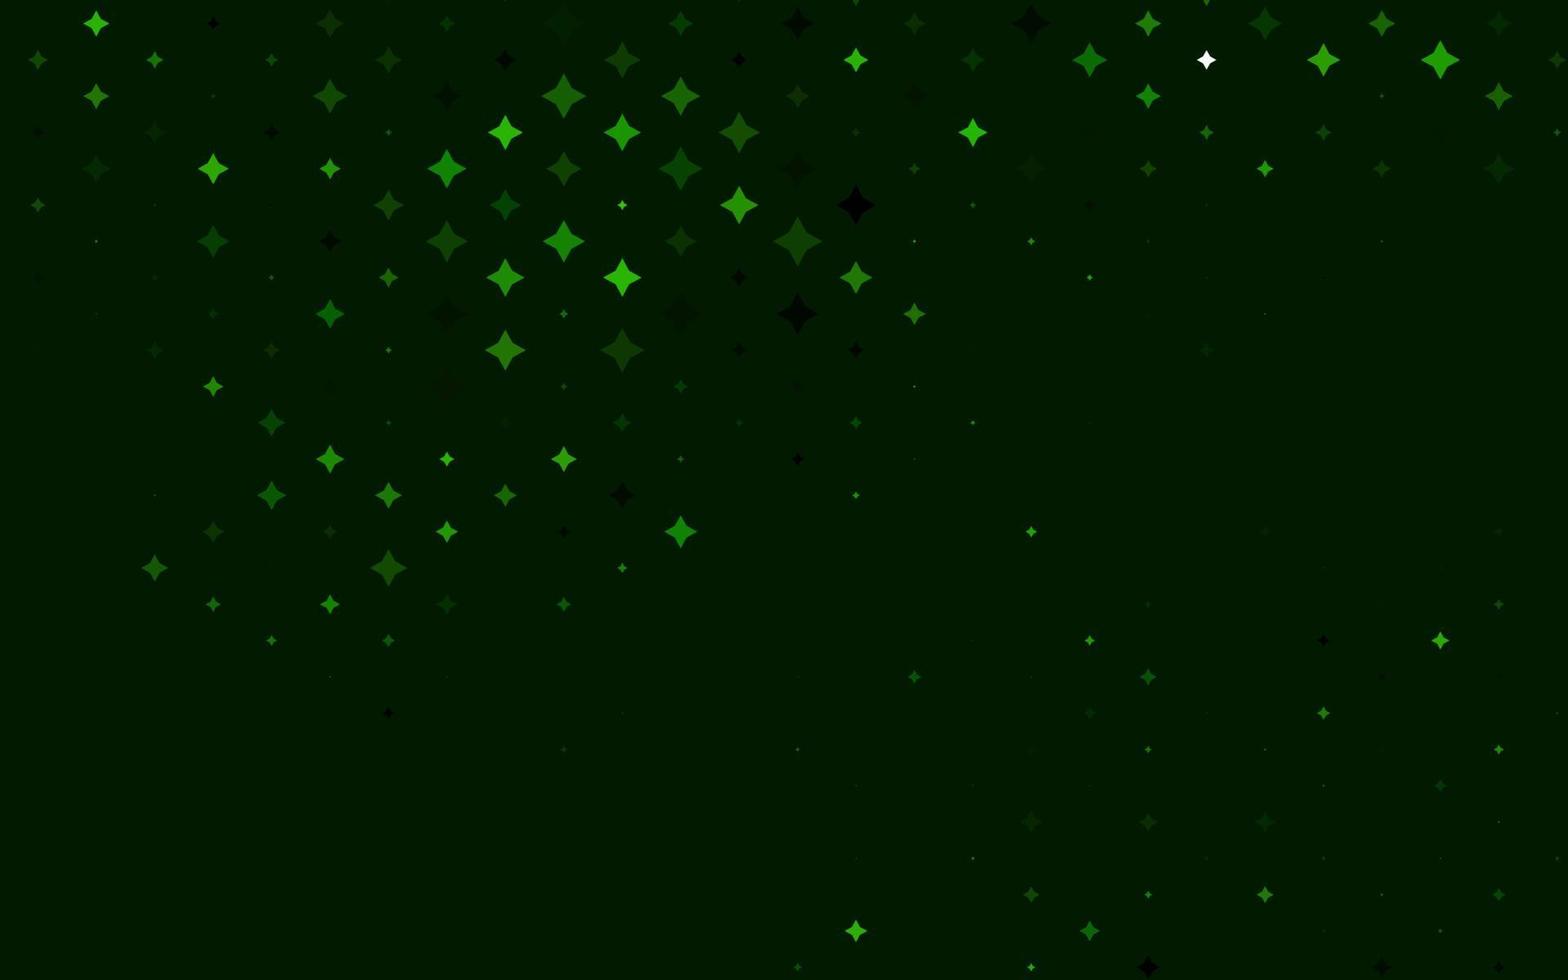 capa de vetor verde claro com estrelas pequenas e grandes.